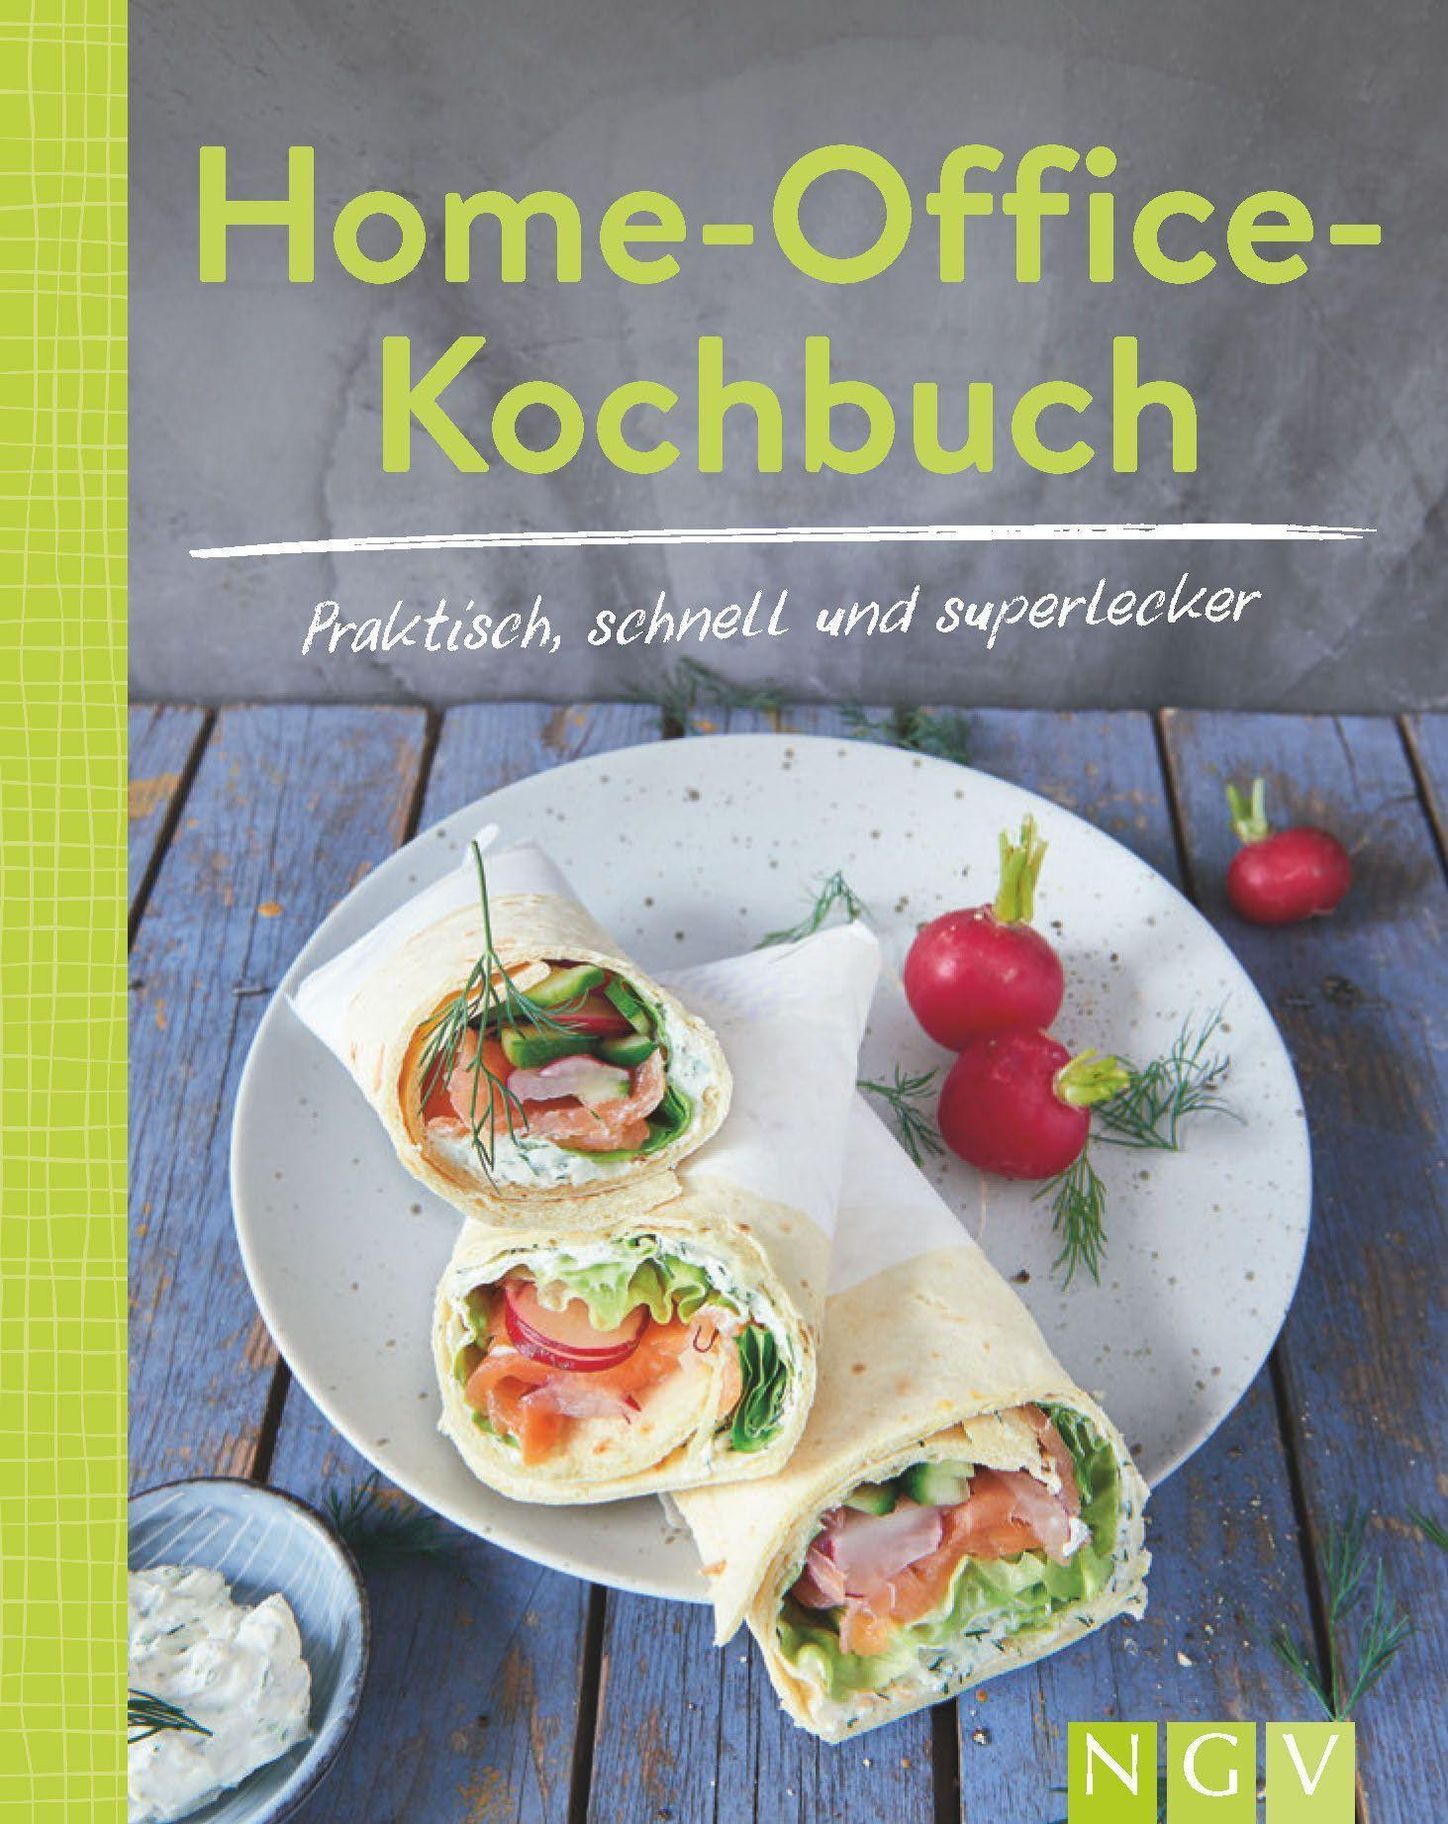 Home-Office-Kochbuch - Praktisch, schnell und superlecker Buch jetzt online  bei Weltbild.at bestellen